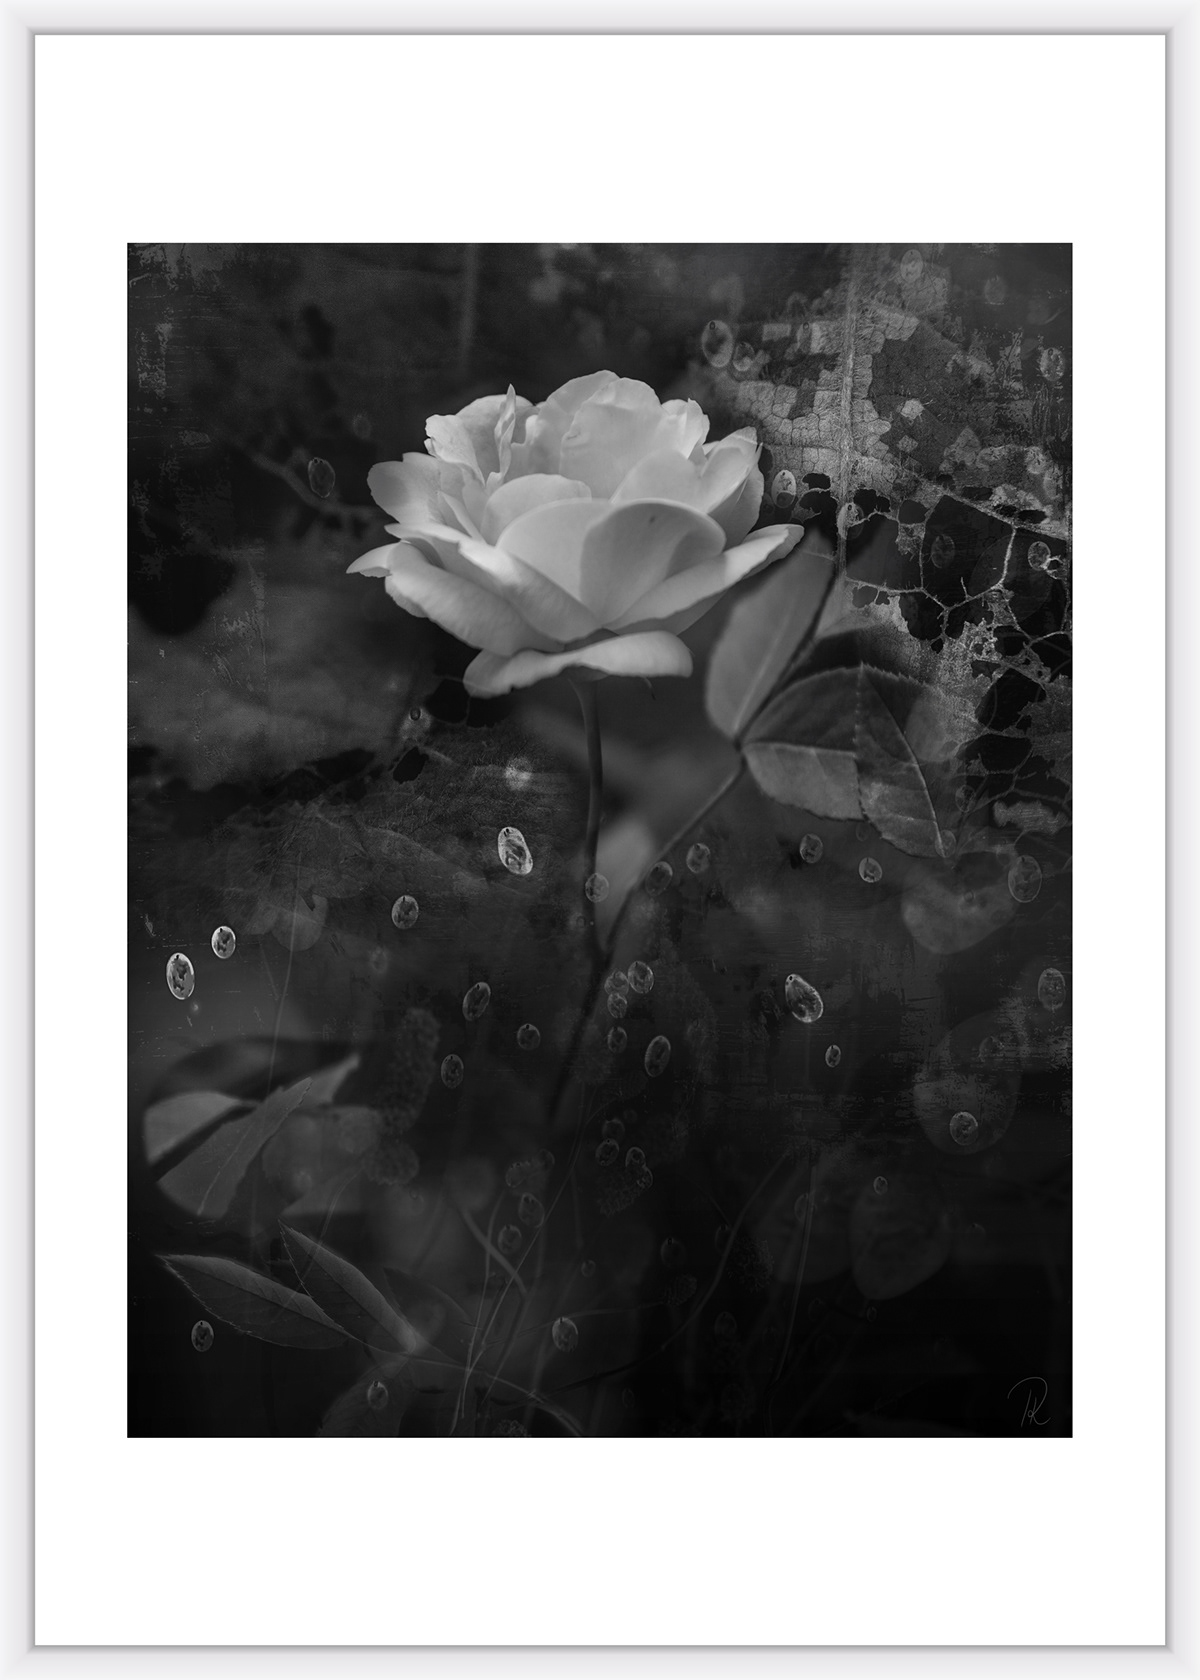 blumen Canon collage Kunstausstellung natur Photographien schwarz weiss wasser fotografie